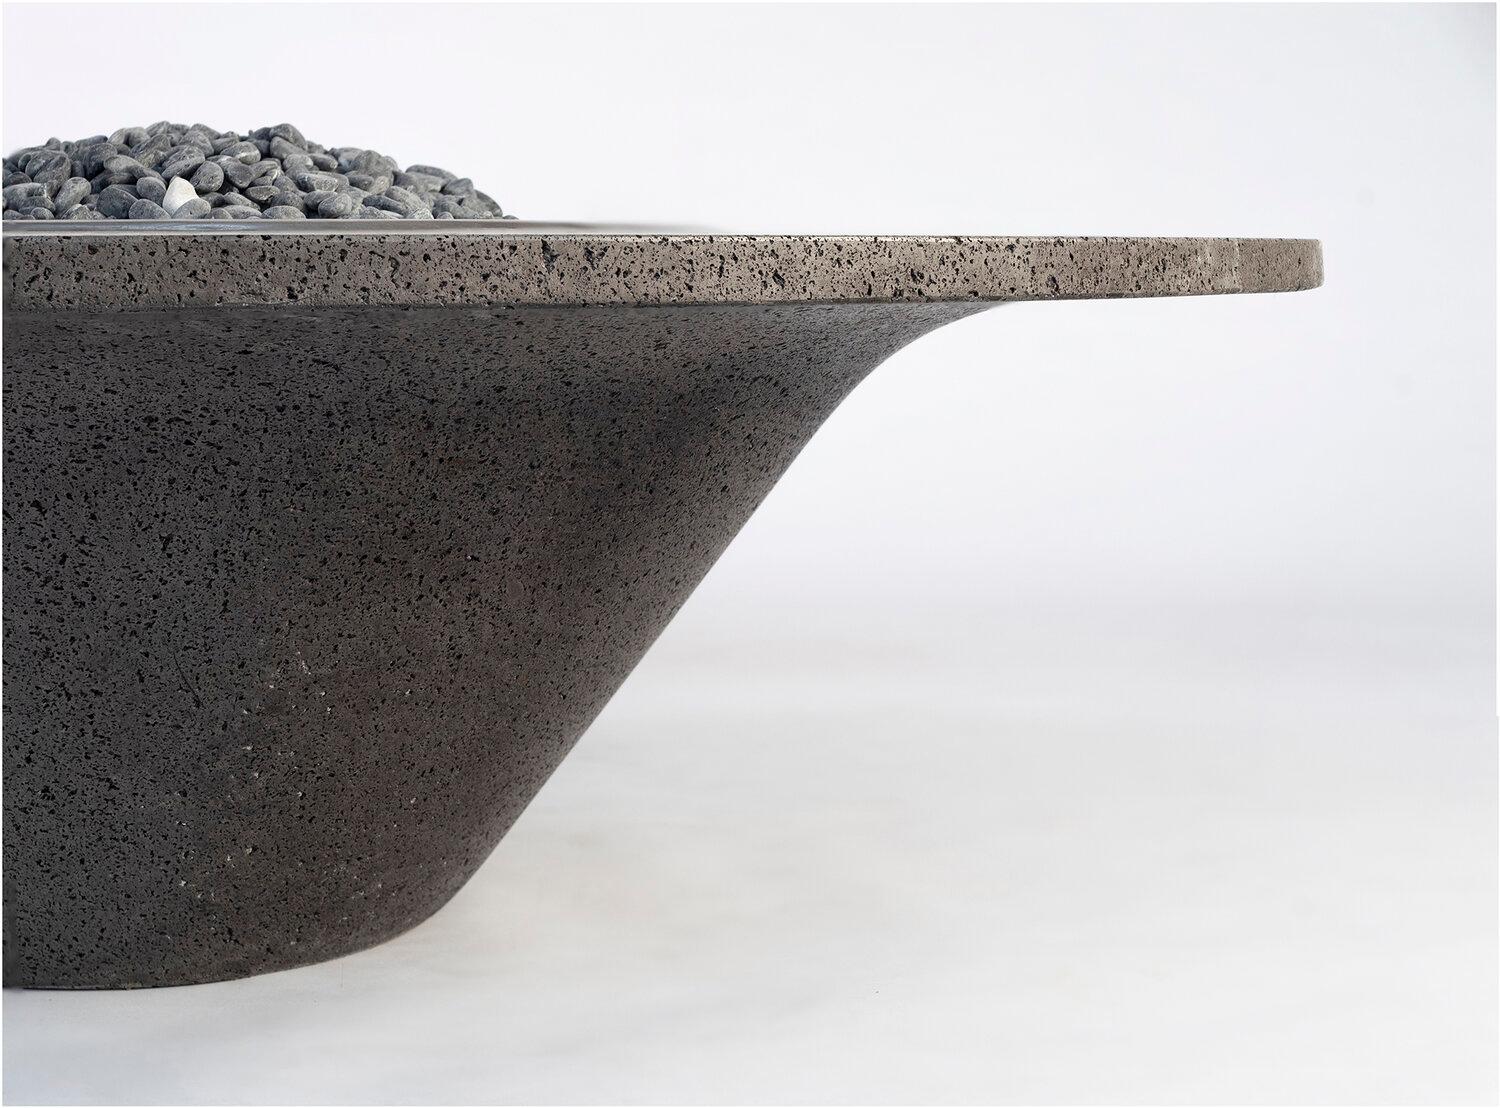 UMO Roca, eine Feuerstelle/Skulptur aus Vulkanstein, die von erfahrenen Handwerkern mit Meißel und Hammer geschaffen wurde, um Symmetrie, Gleichgewicht, Funktion und Form zu schaffen. Innerhalb dieser beeindruckenden monolithischen Einfachheit und